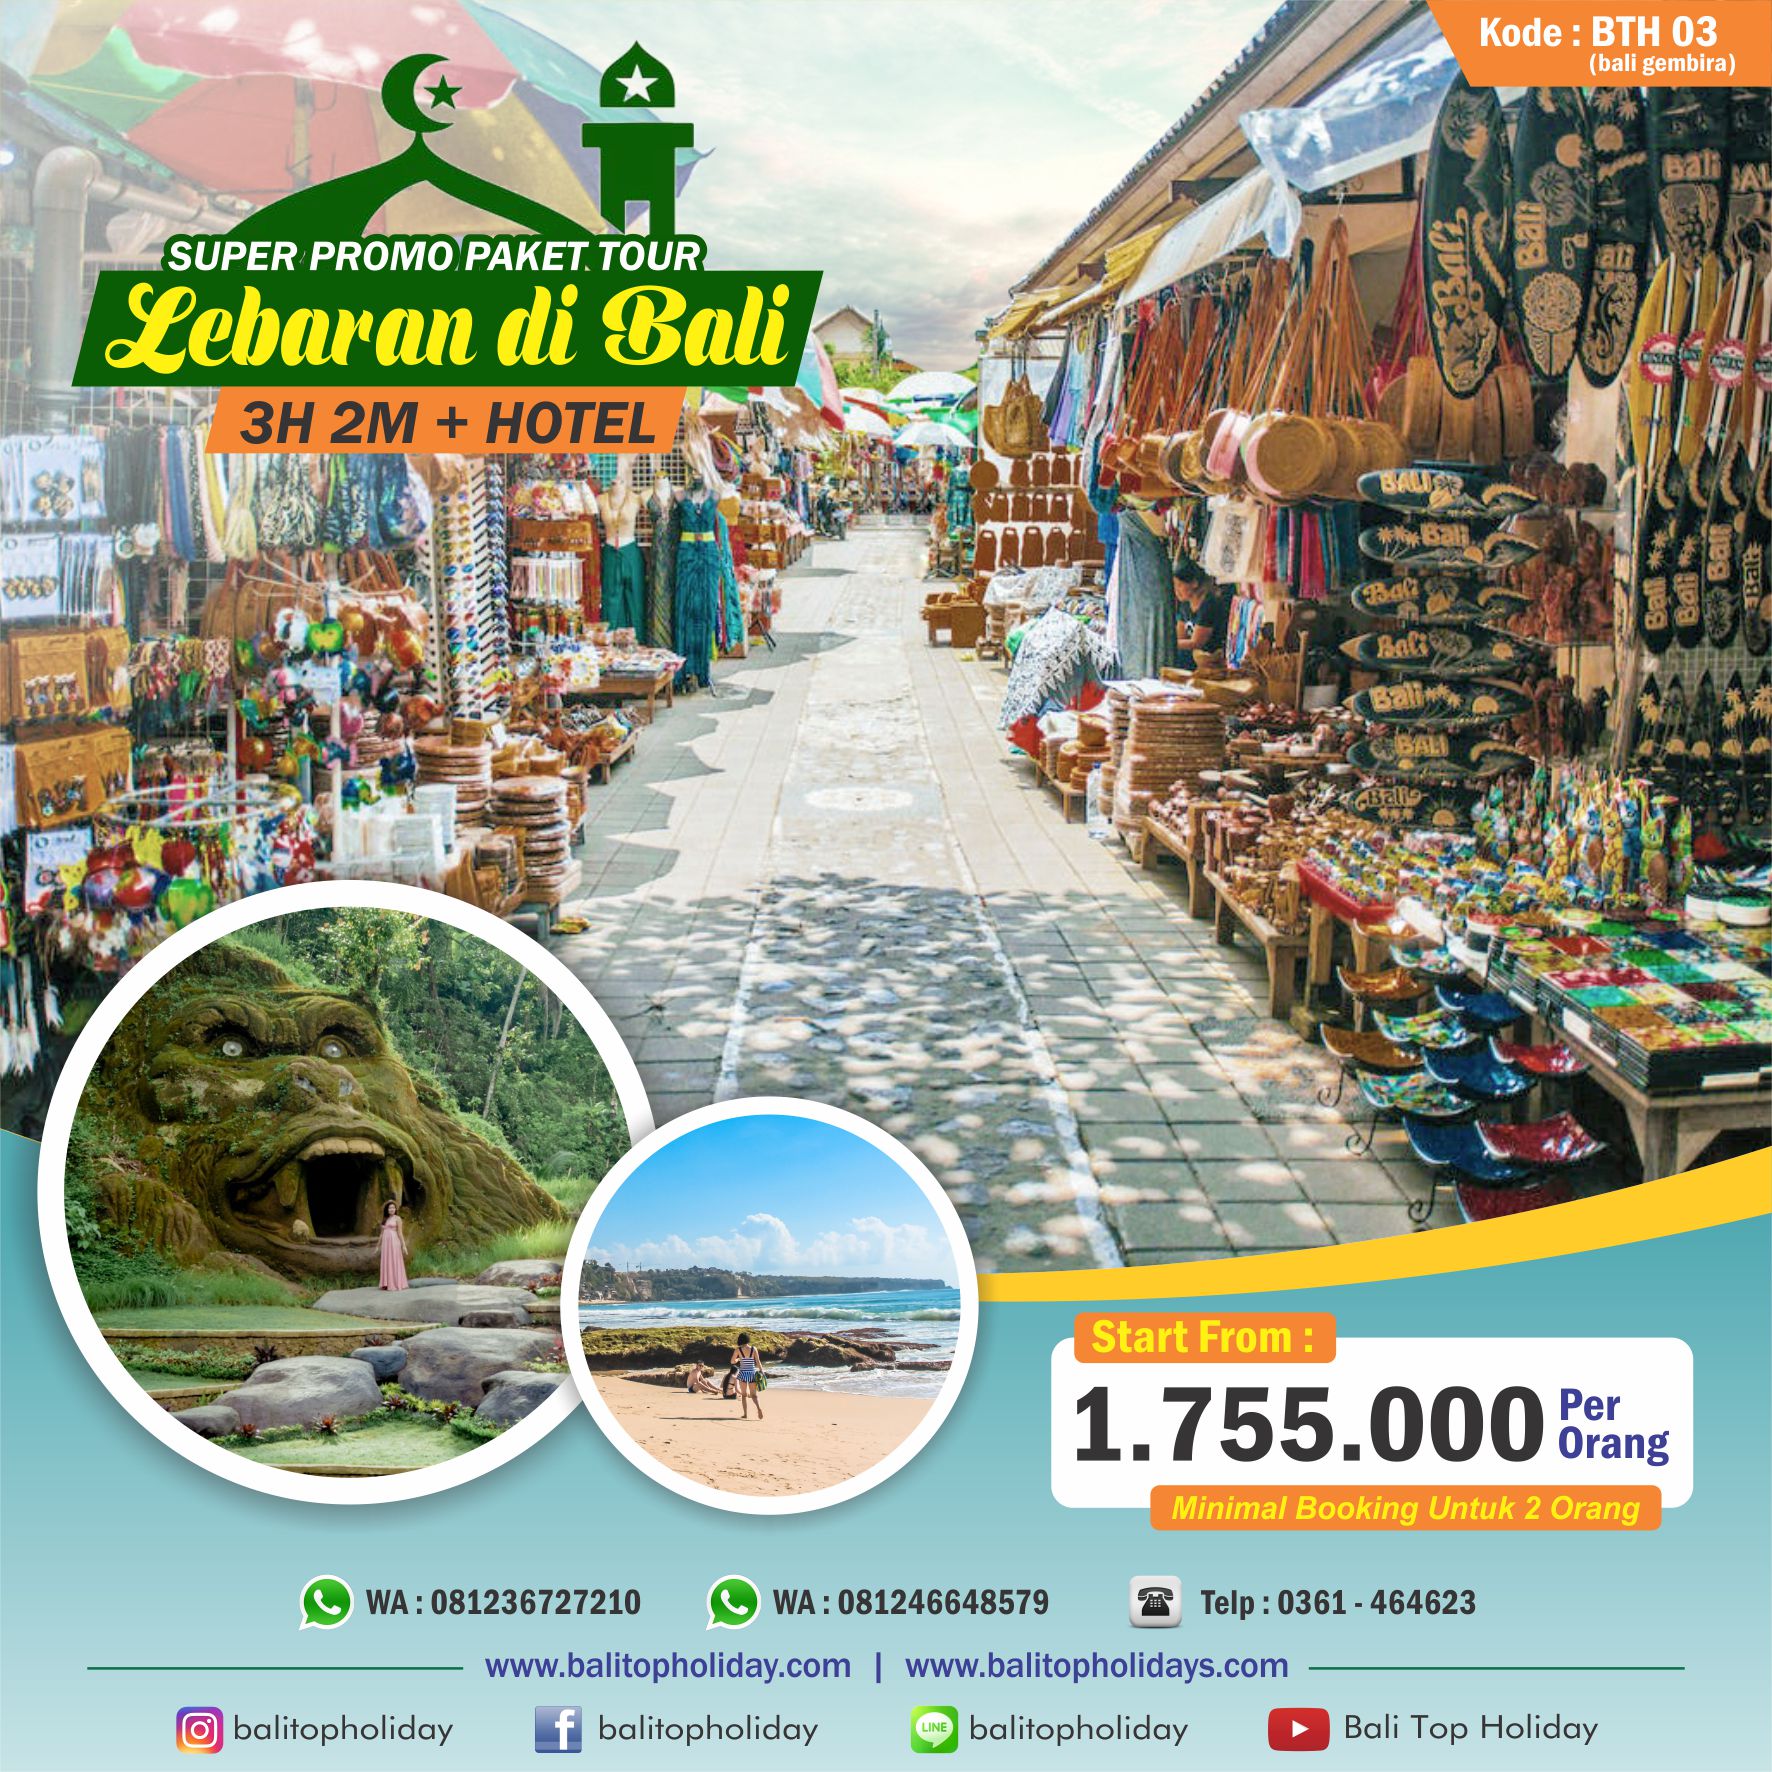 Promo Paket Tour Lebaran 2021 di Bali, Paket wisata